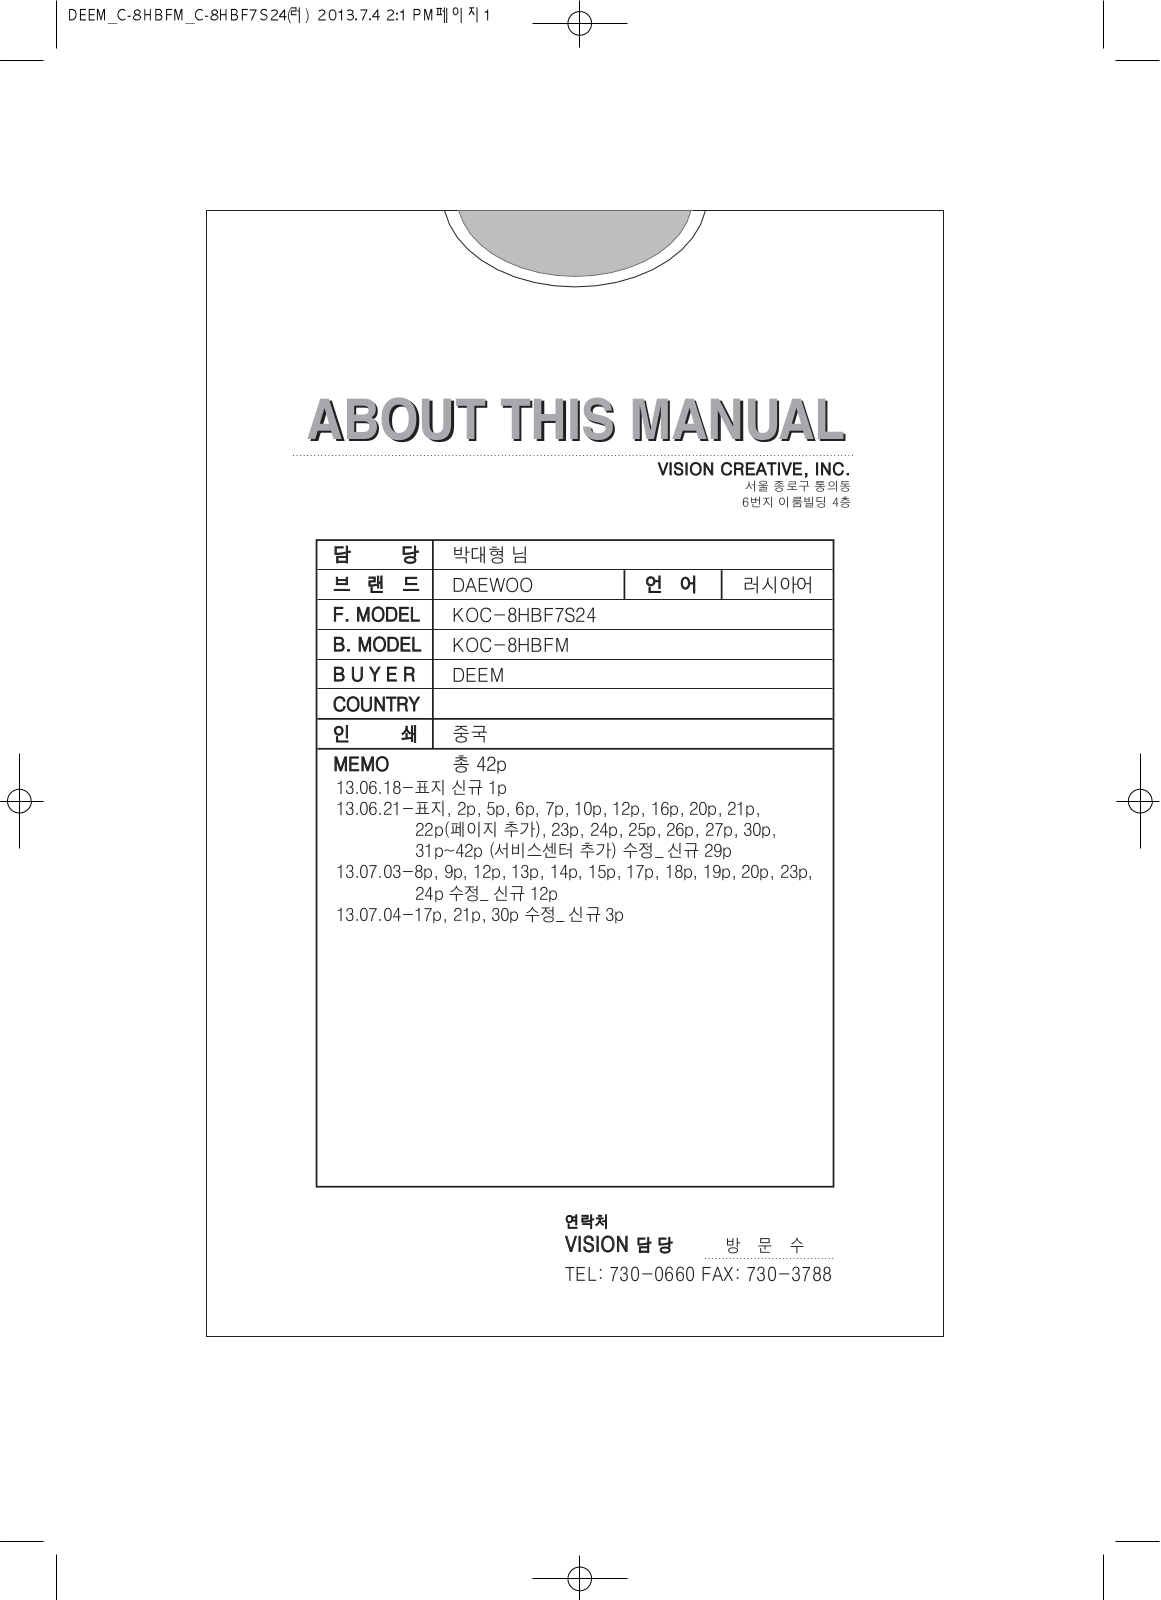 Daewoo KOC-8HBFM User Manual